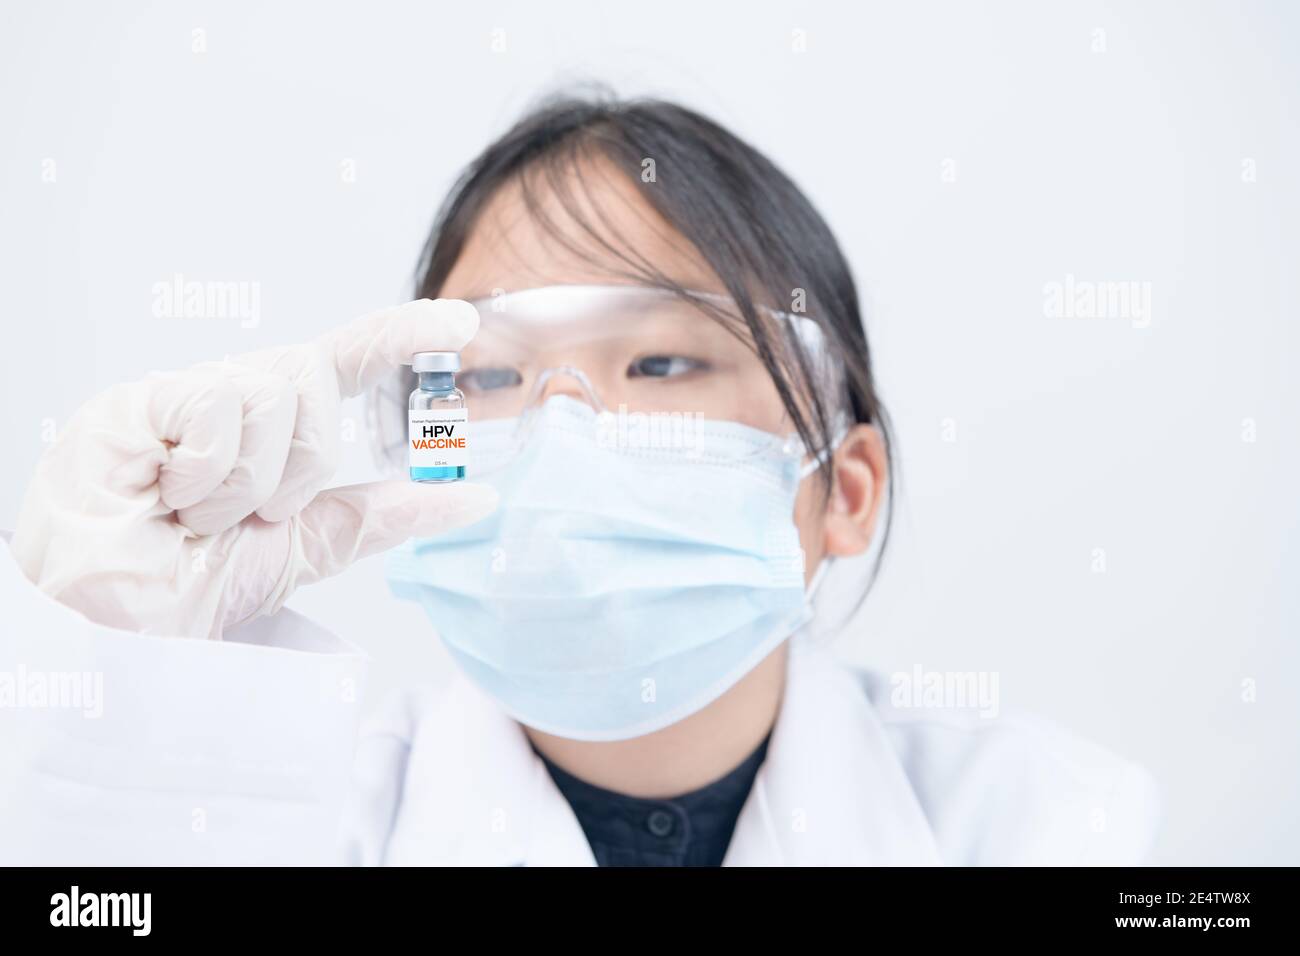 Kleiner Wissenschaftler oder Arzt, der HPV-Impfstoff auf weißem Hintergrund hält. Impfstoff schützt vor Meningitis und Keuchhusten. Stockfoto